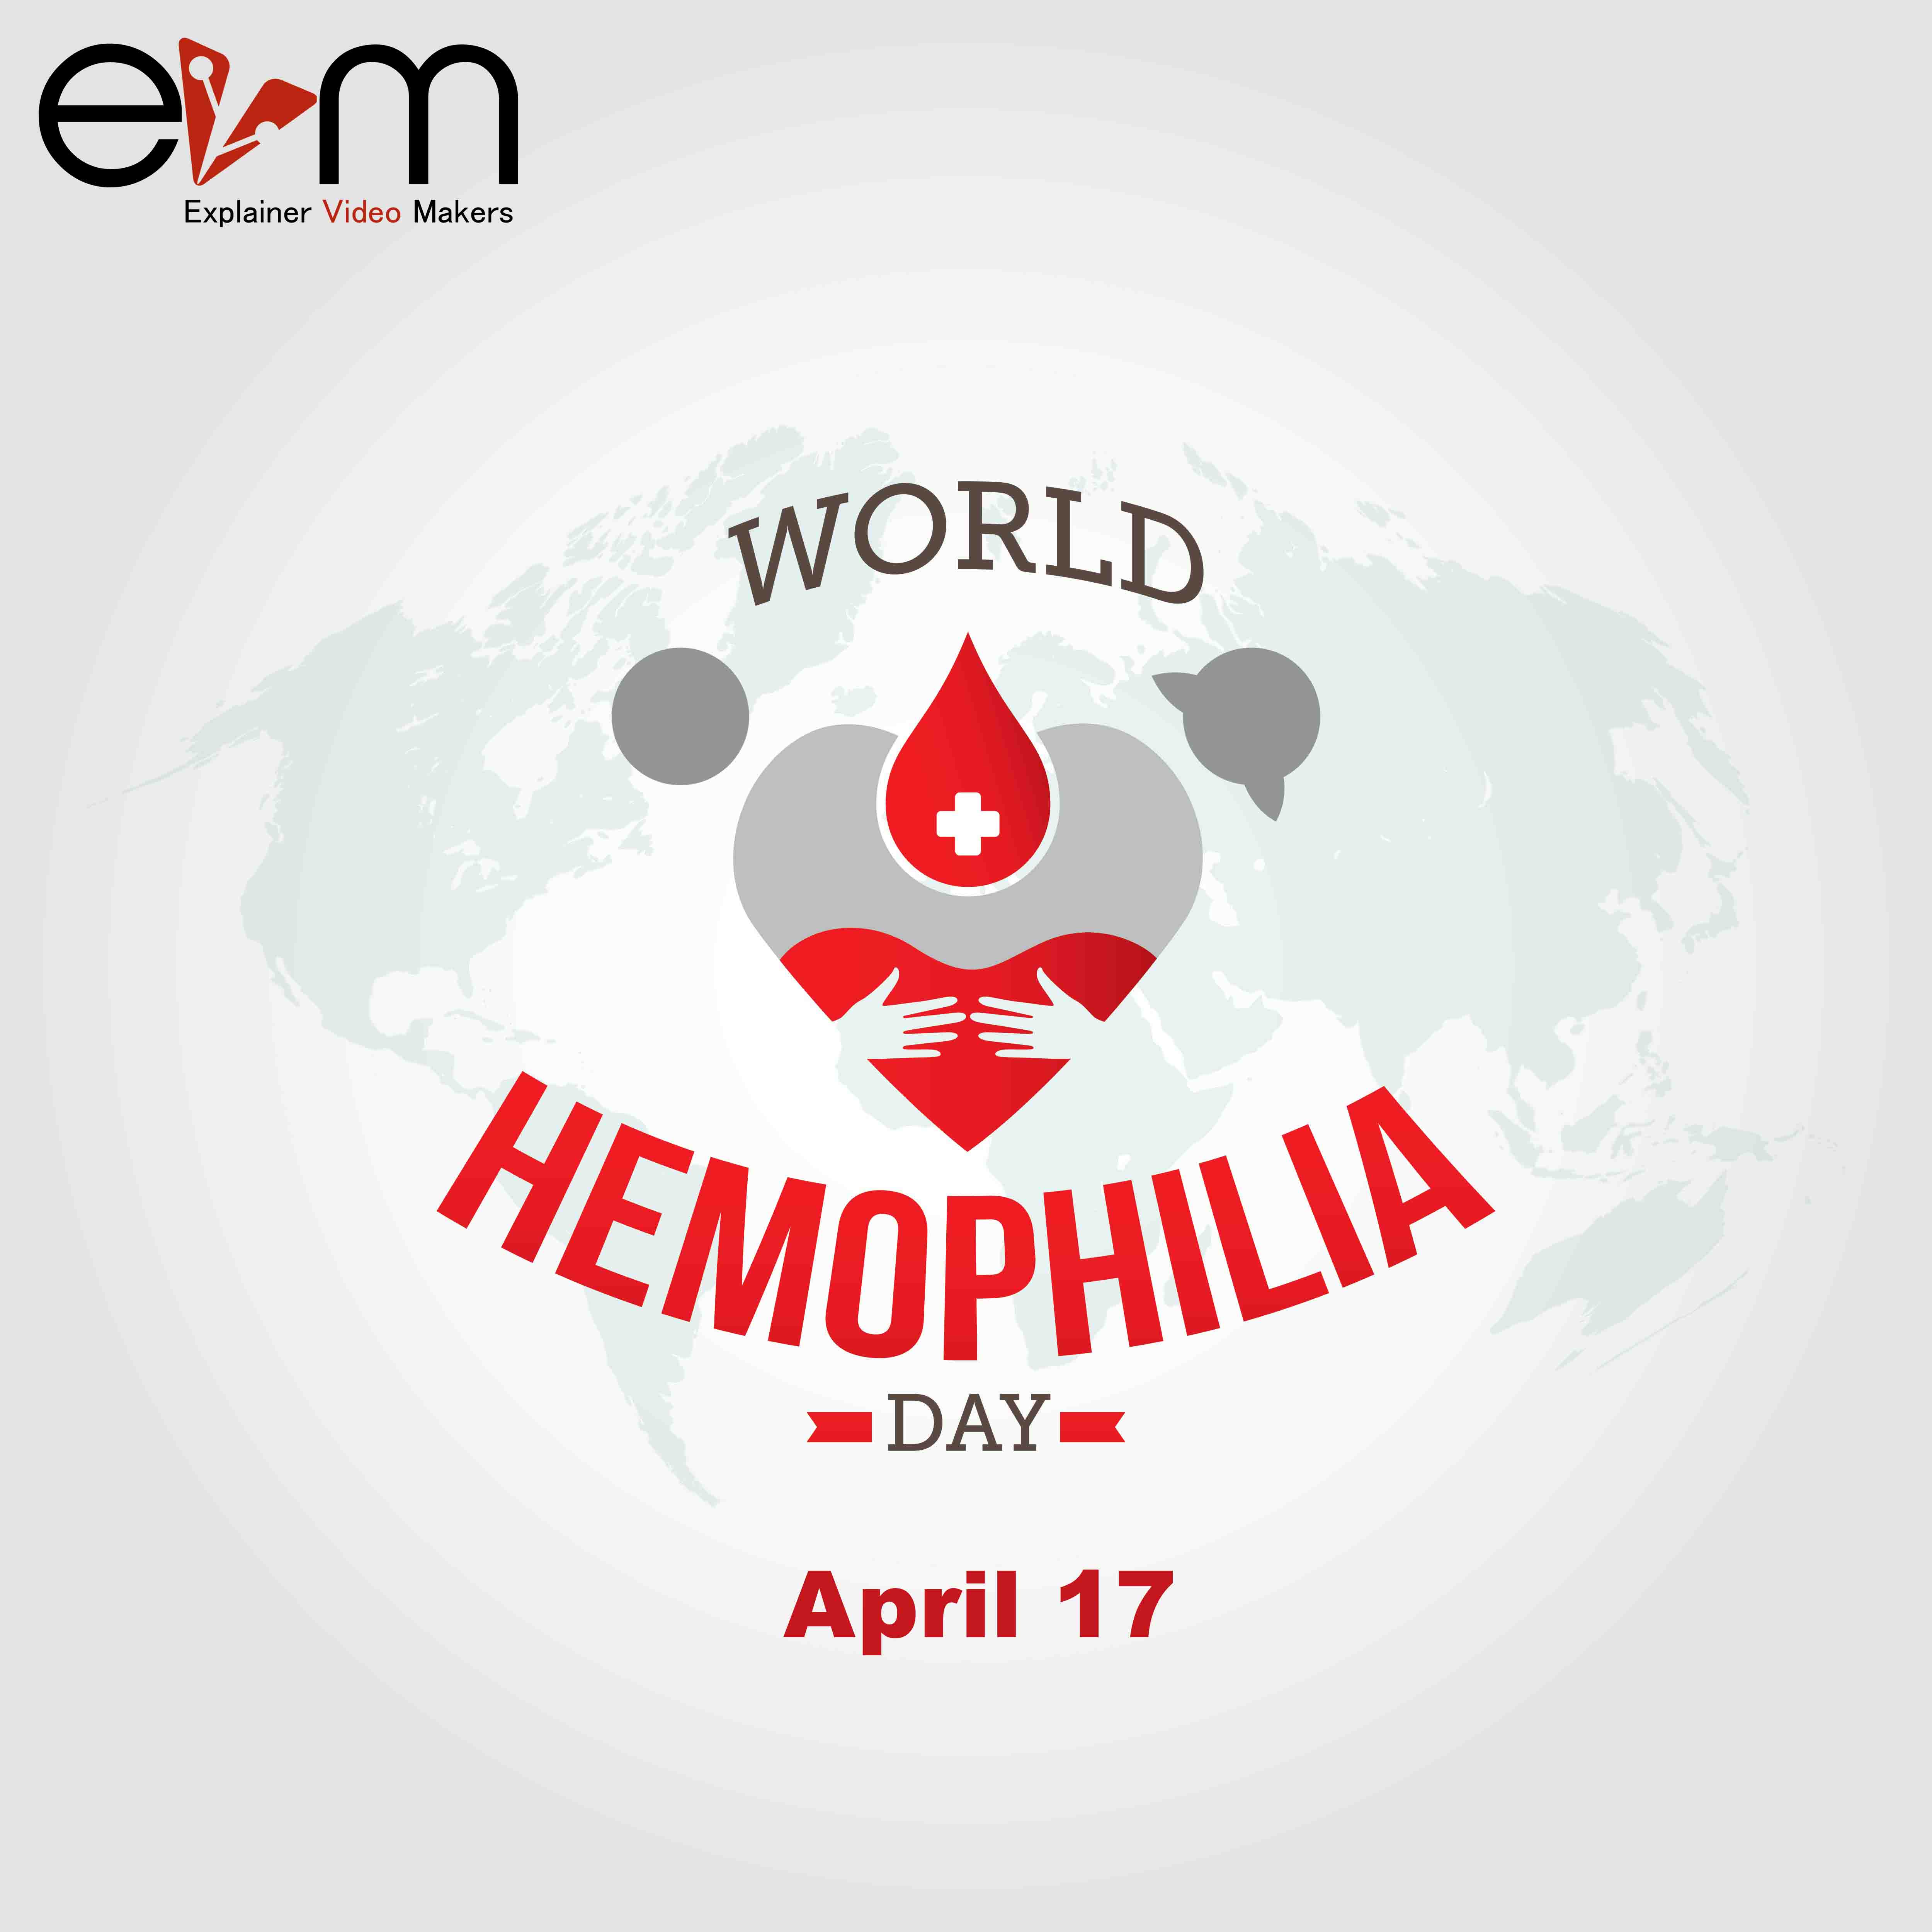 World Hemophilia Day evm